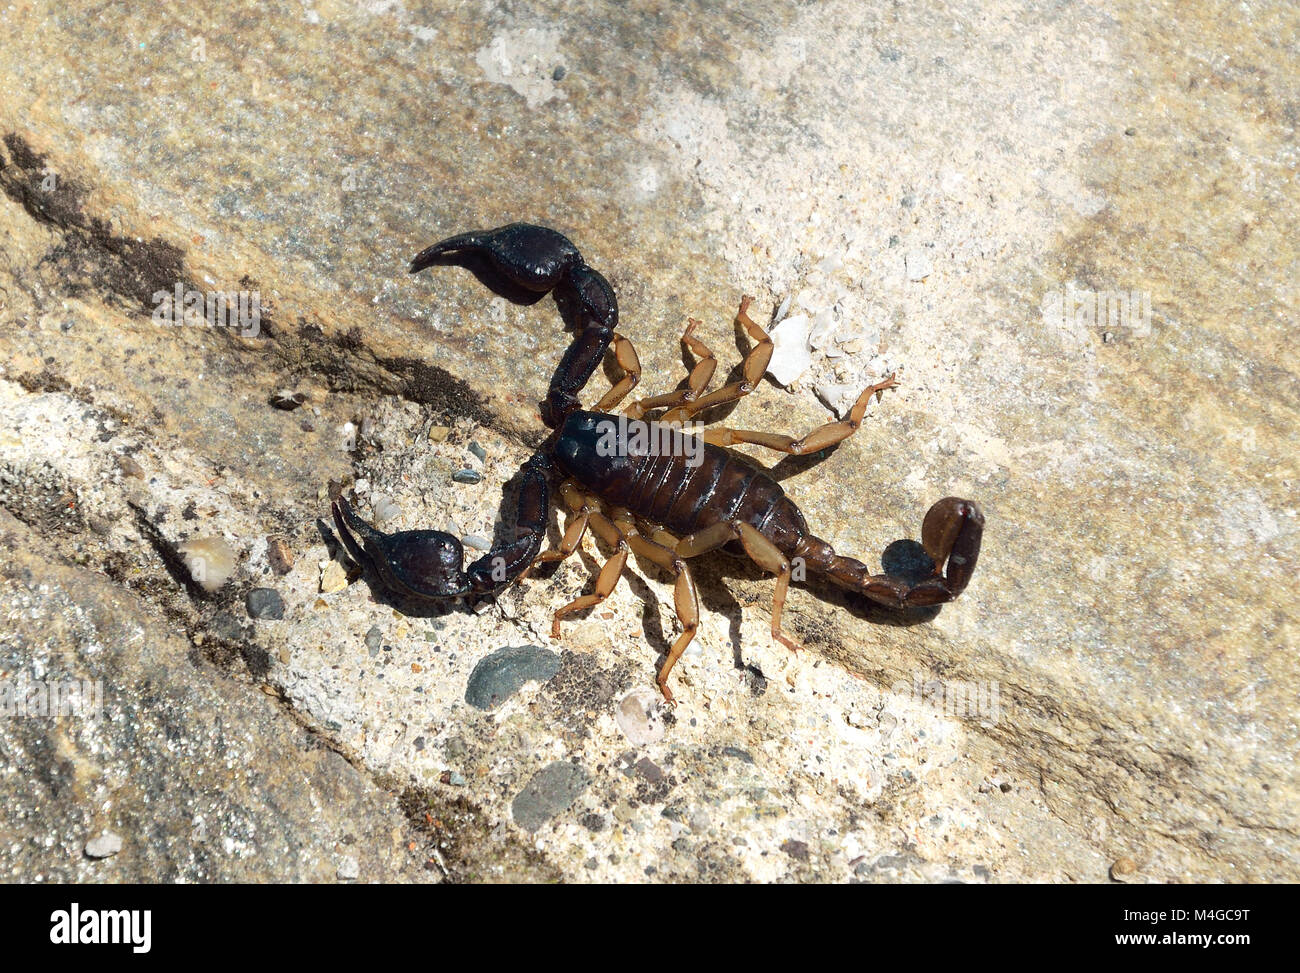 Alive scorpion on rocky background Stock Photo